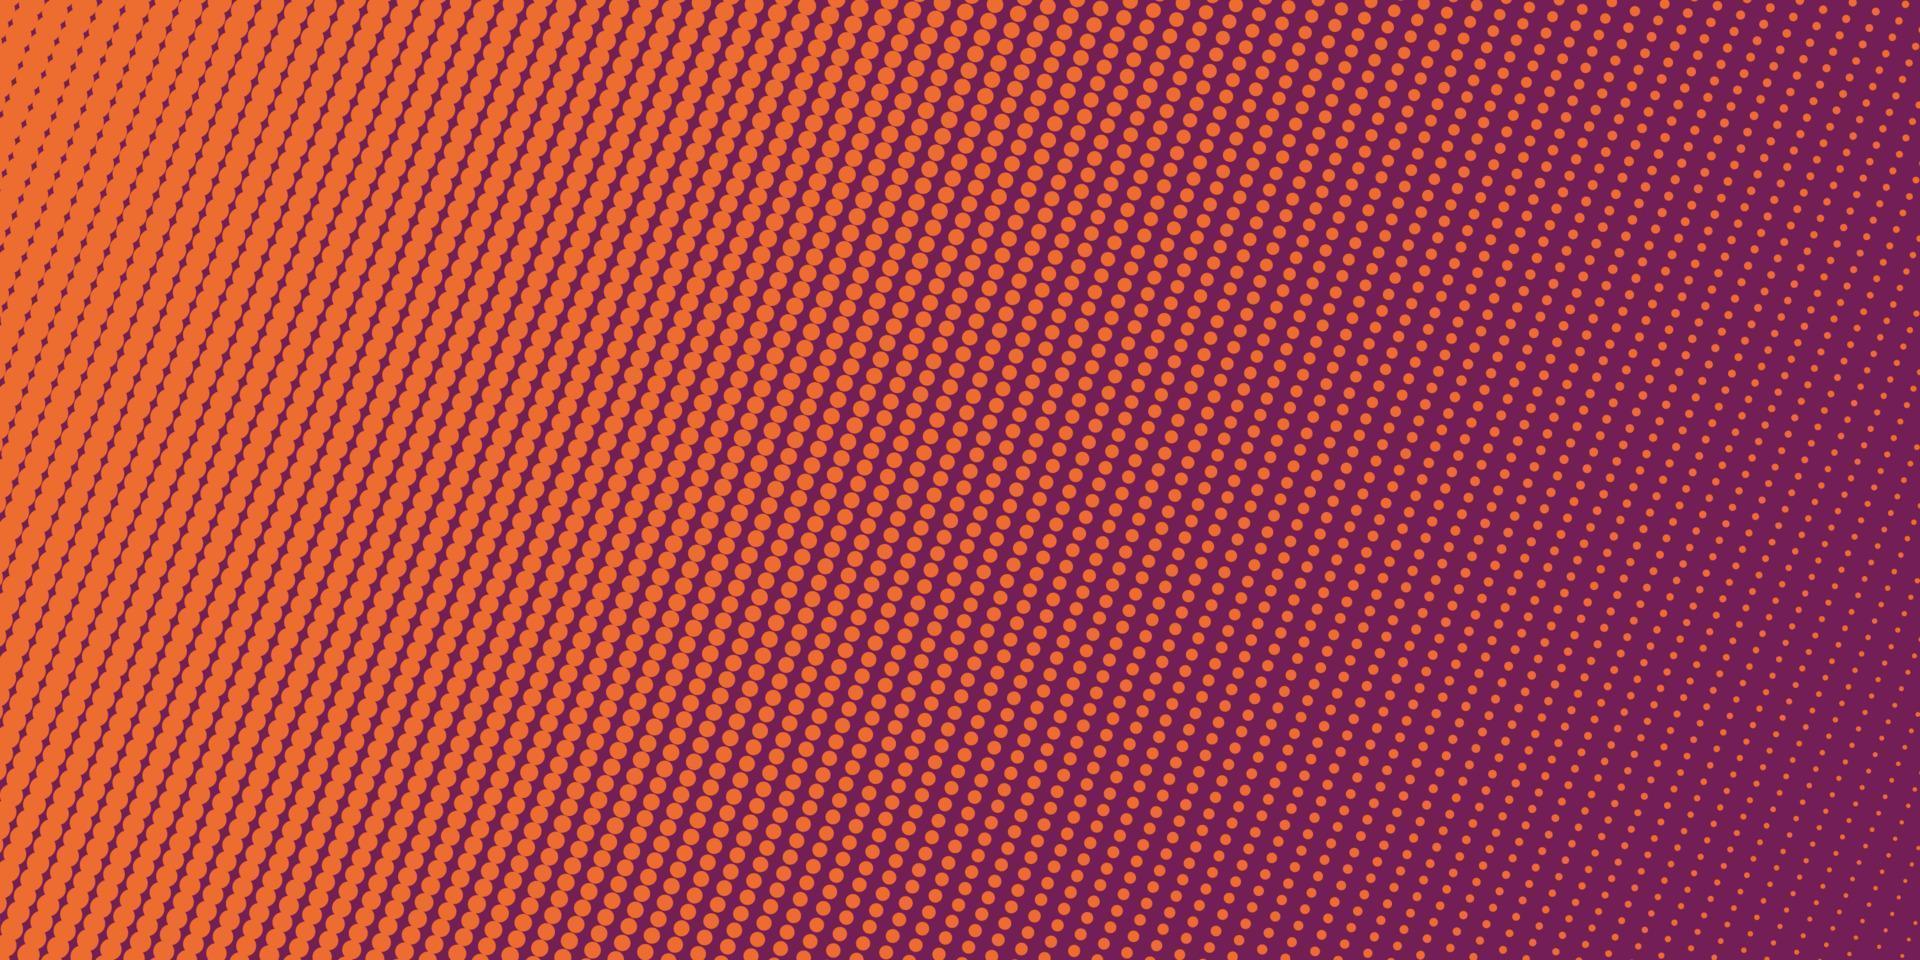 abstrakter Hintergrund mit Halbtonstil. trendige gepunktete Farbverlaufskulisse vektor